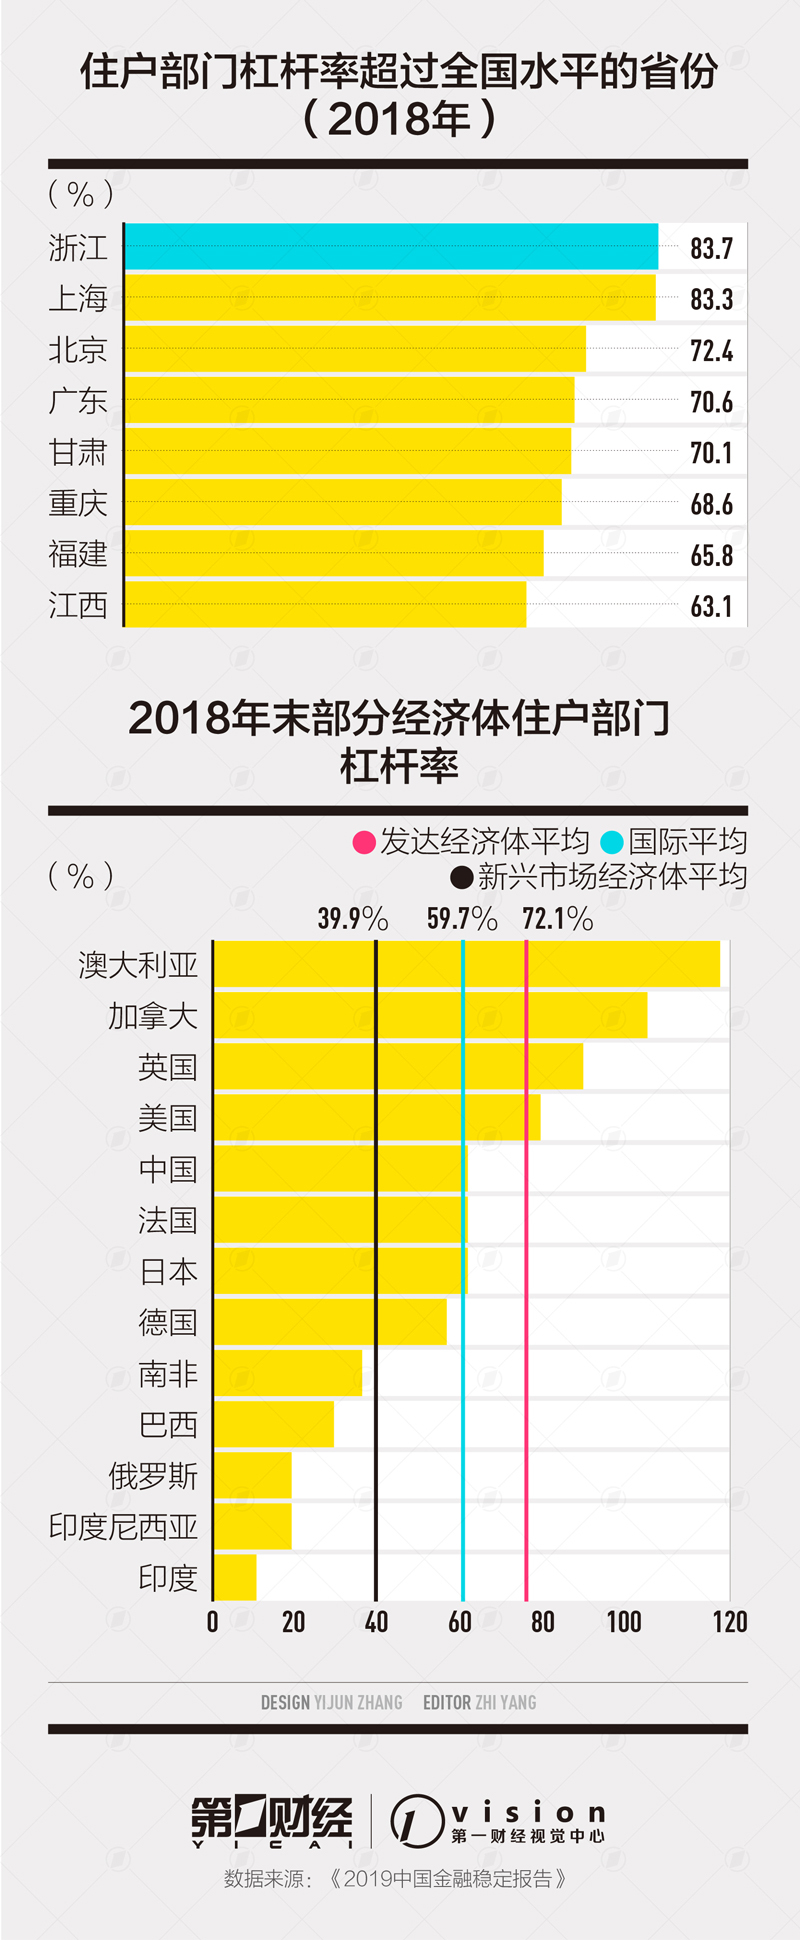 30个大中城市住户杠杆率杭州居首 省份排行北京列第三